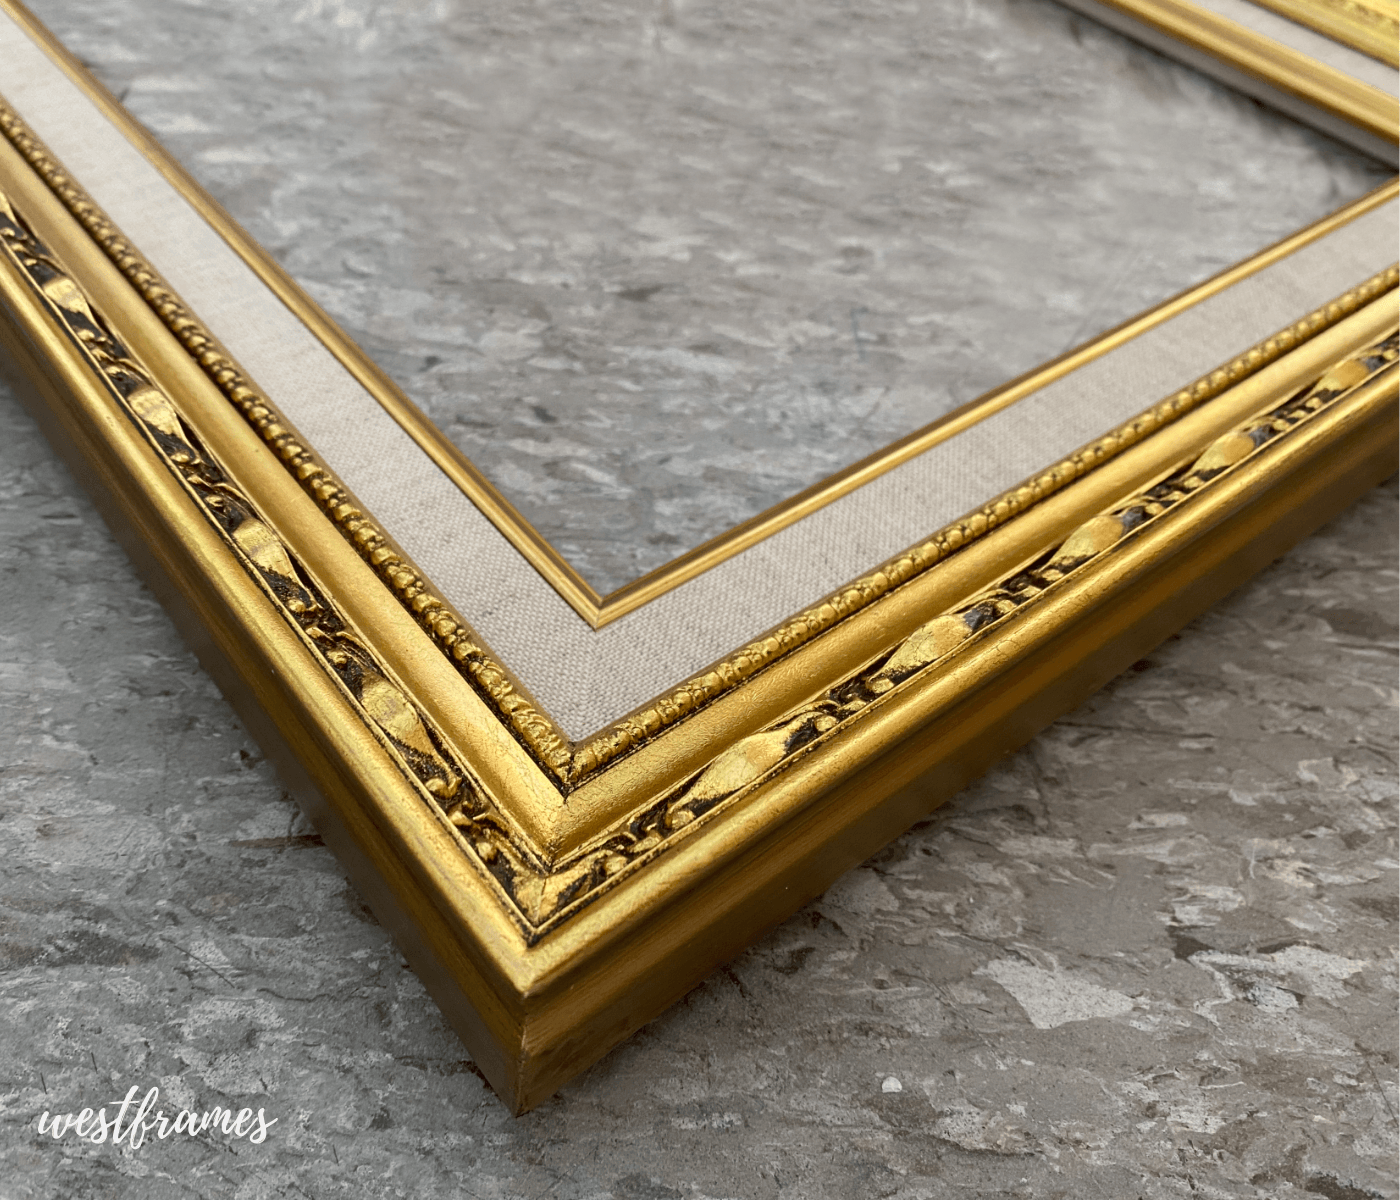 Lulu Antique Gold Leaf Wood Ornate Baroque Picture Frame with Natural Linen Liner 2.5" Wide - West Frames